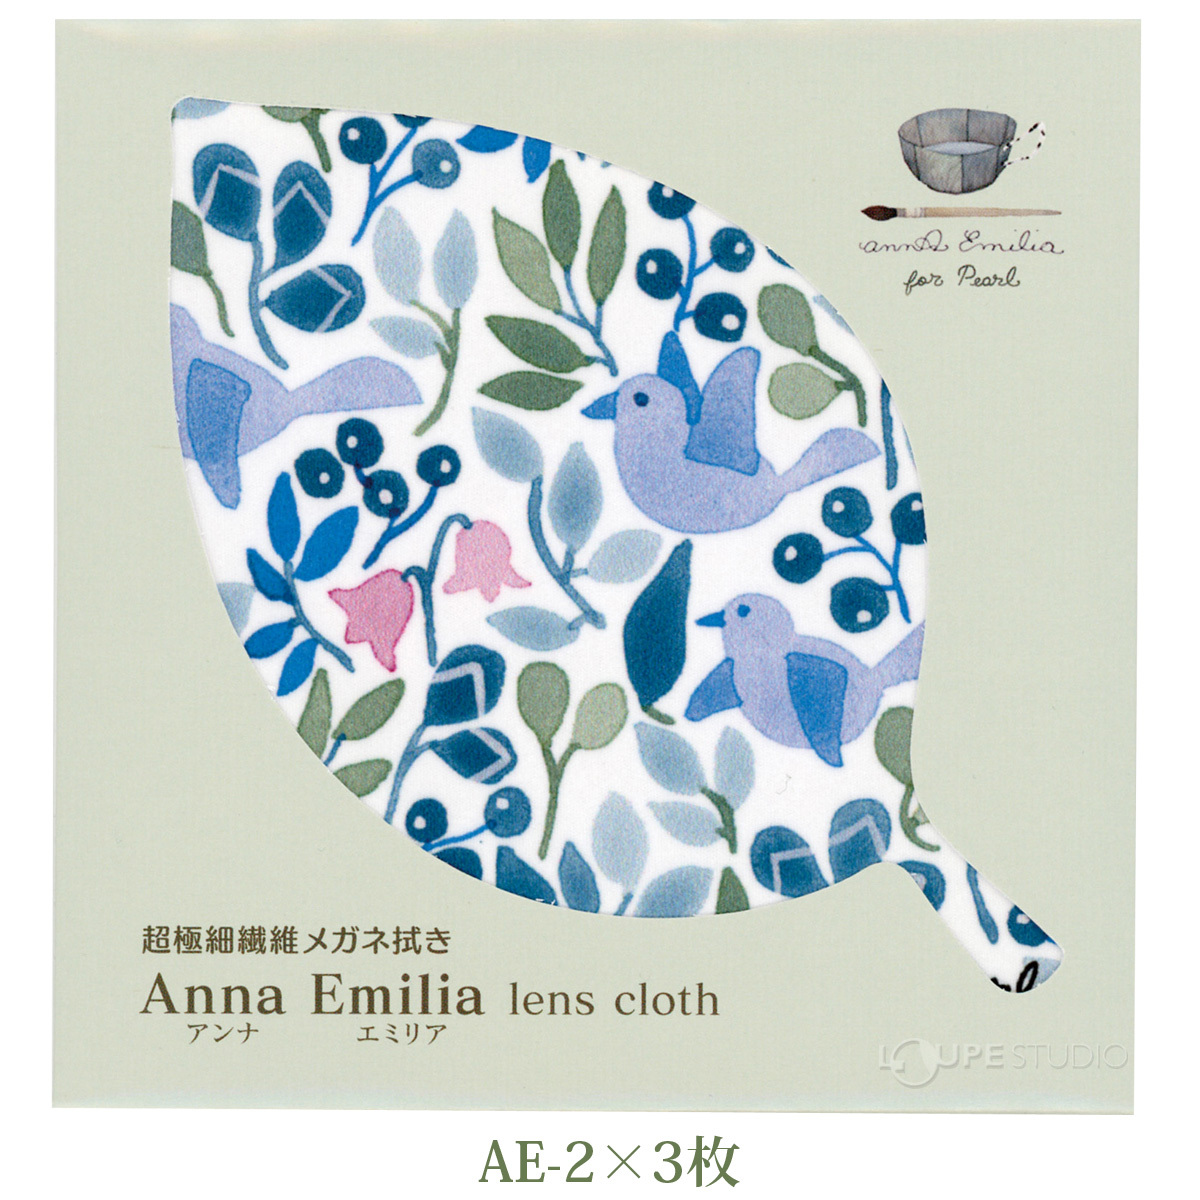 A 他の商品と同梱制限有  Emilia メガネ拭き 1枚  AE-4 キャンセル返品不可 出荷グループ  誕生日プレゼント ザヴィーナミニマックス Anna